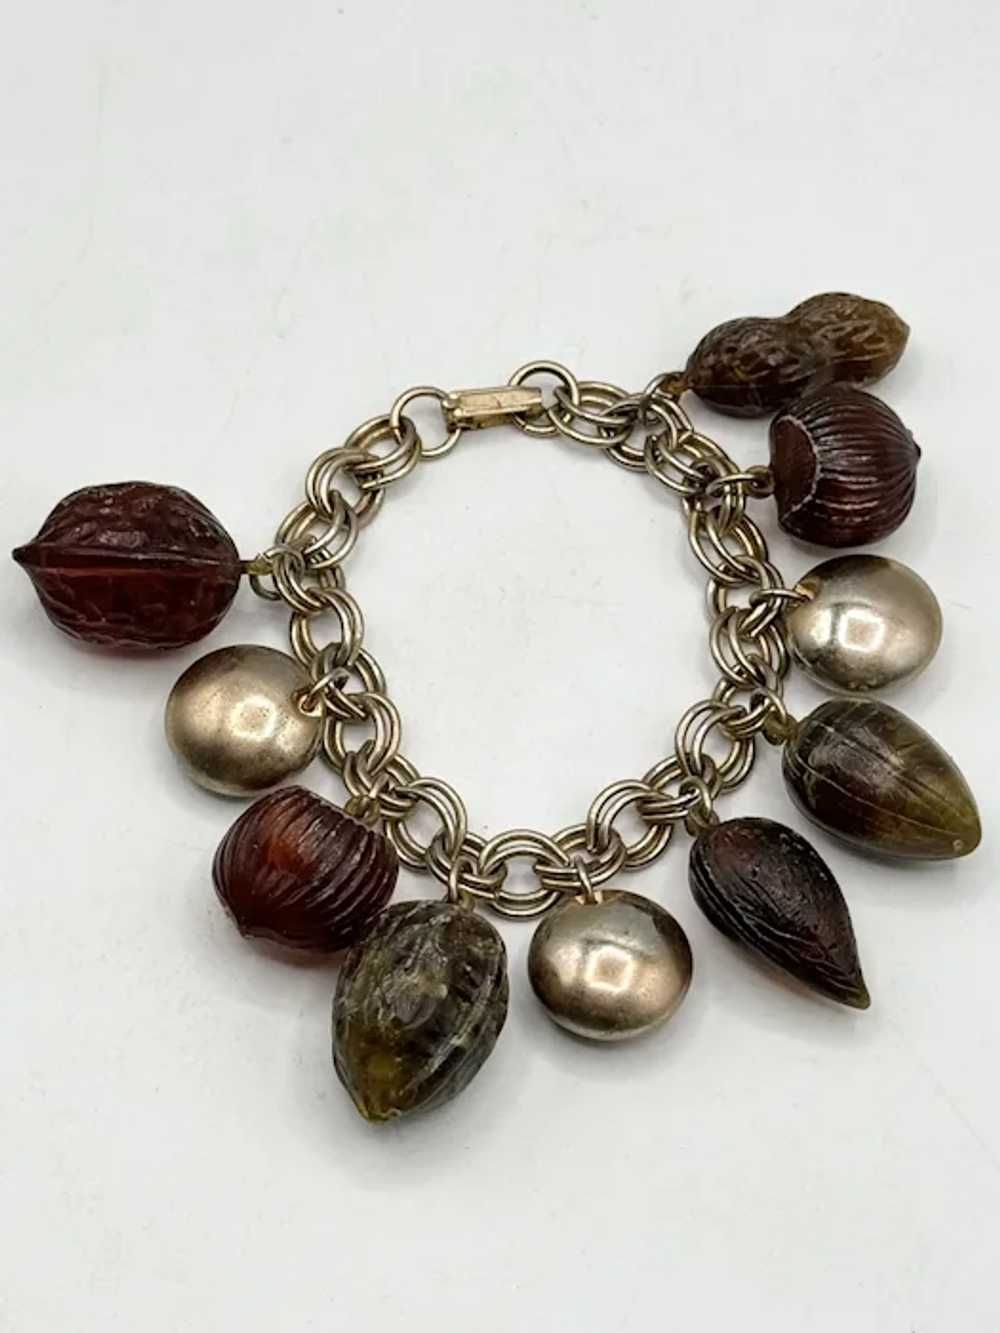 Vintage peanut nut acorn charm bracelet - image 2